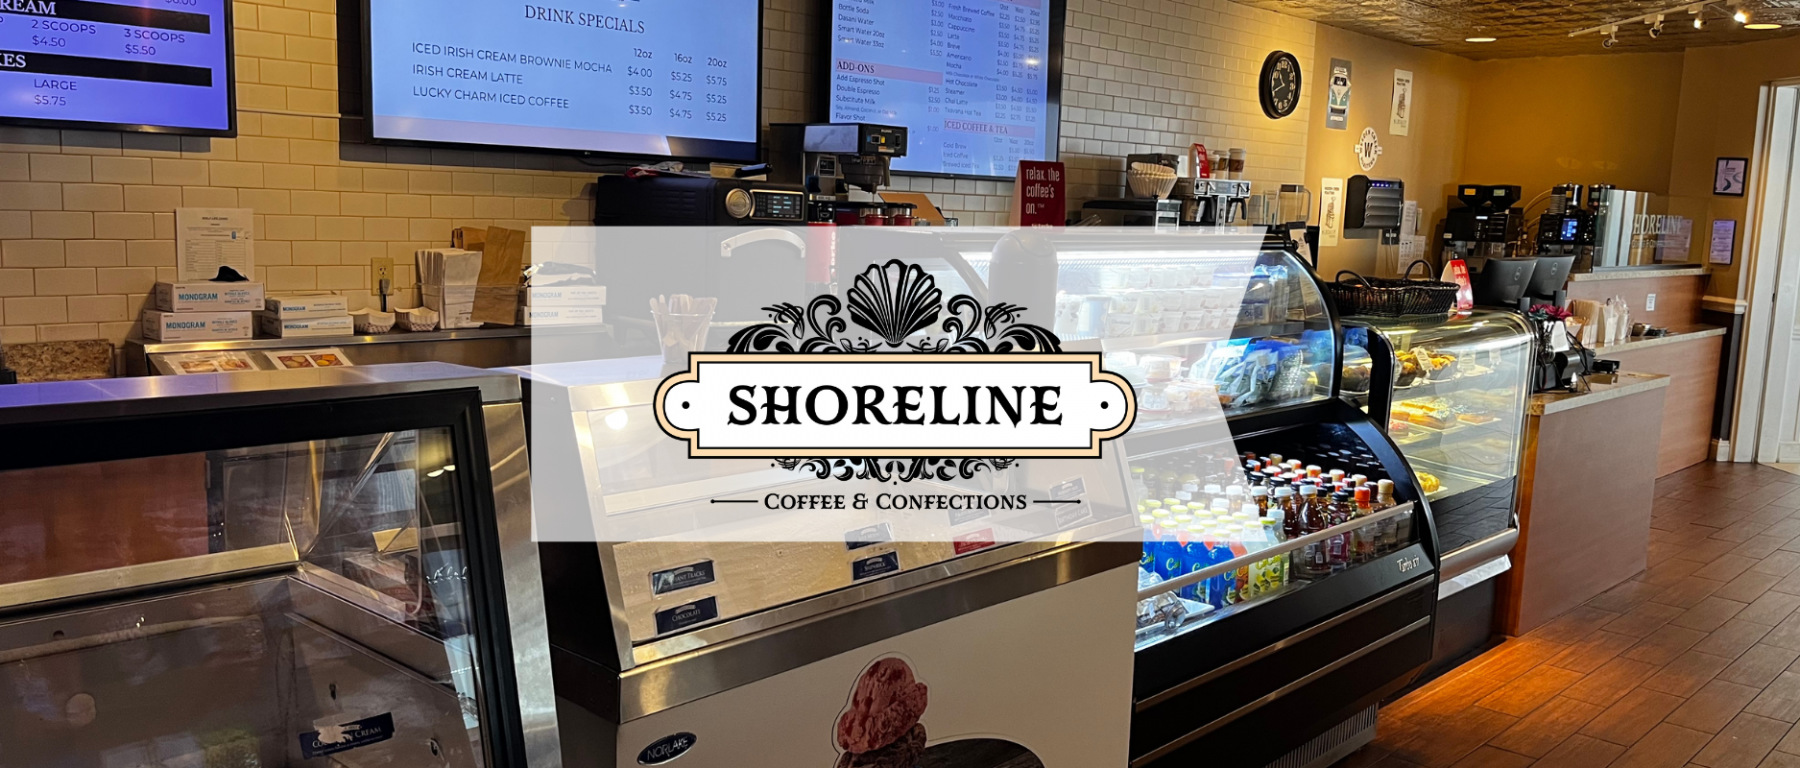 SHORELINE CAFE WEBSITE HEADER